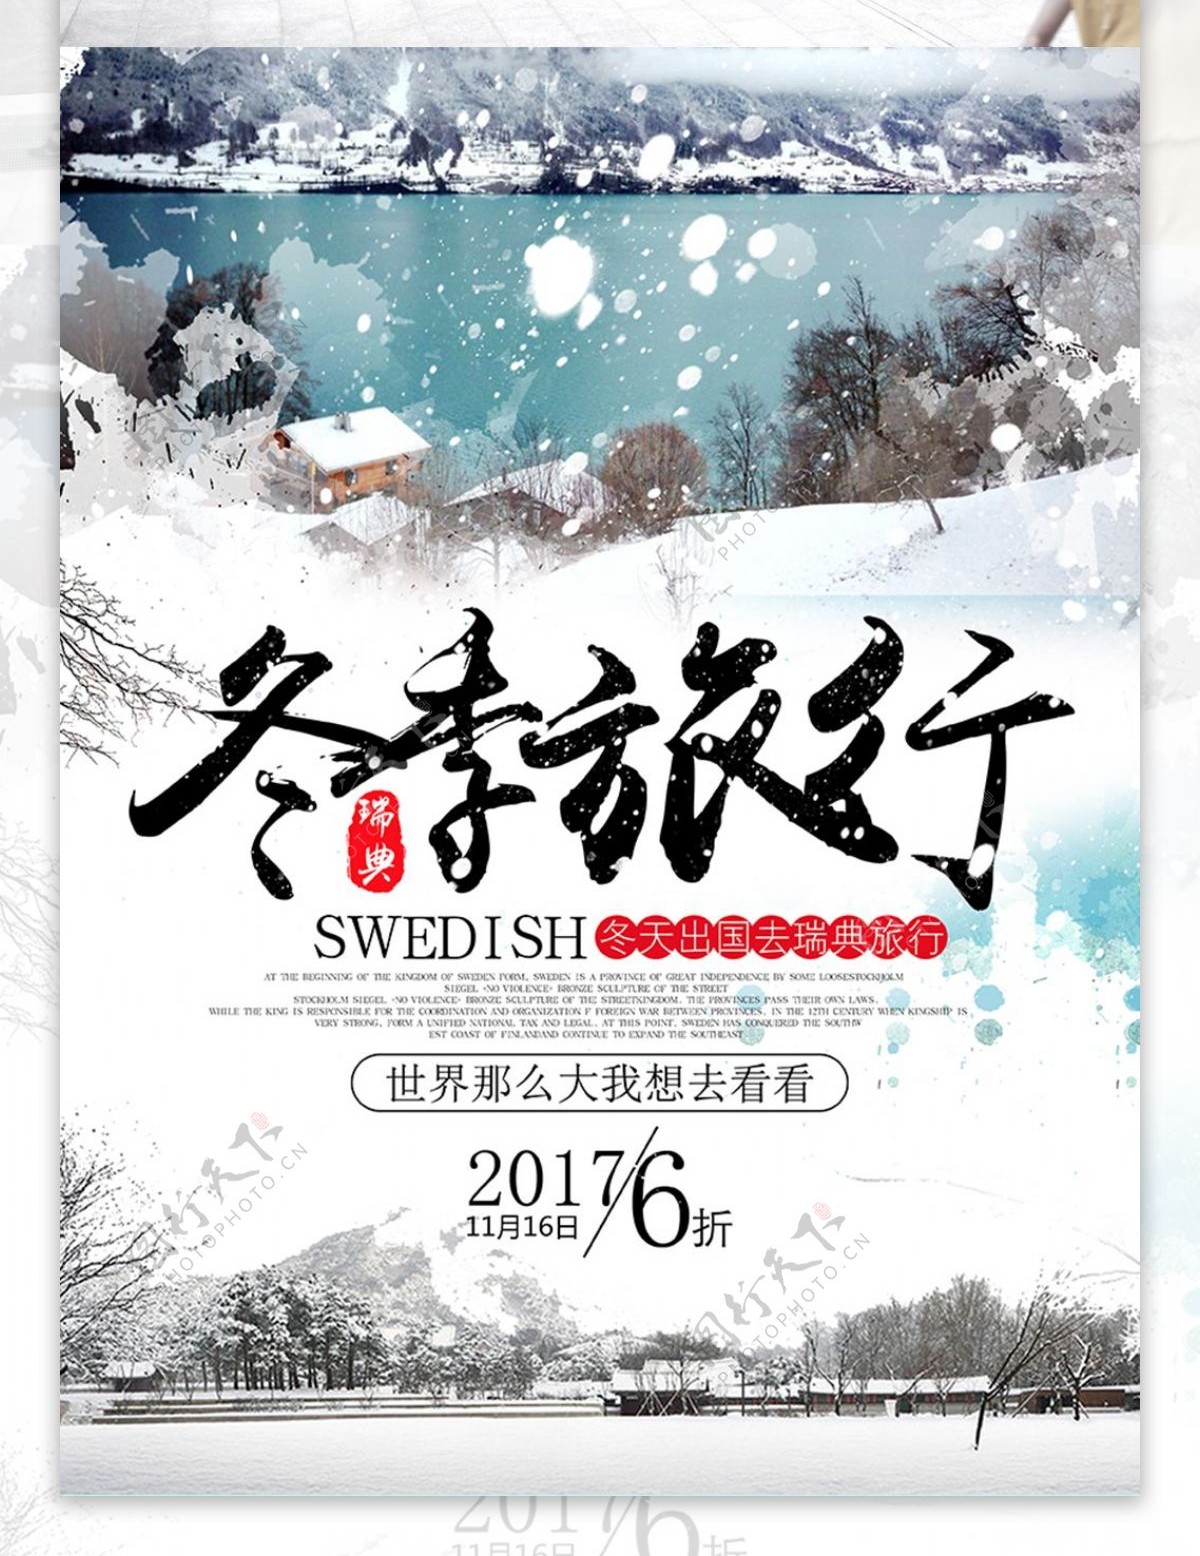 冬季瑞典旅行海报设计旅行社路线宣传海报